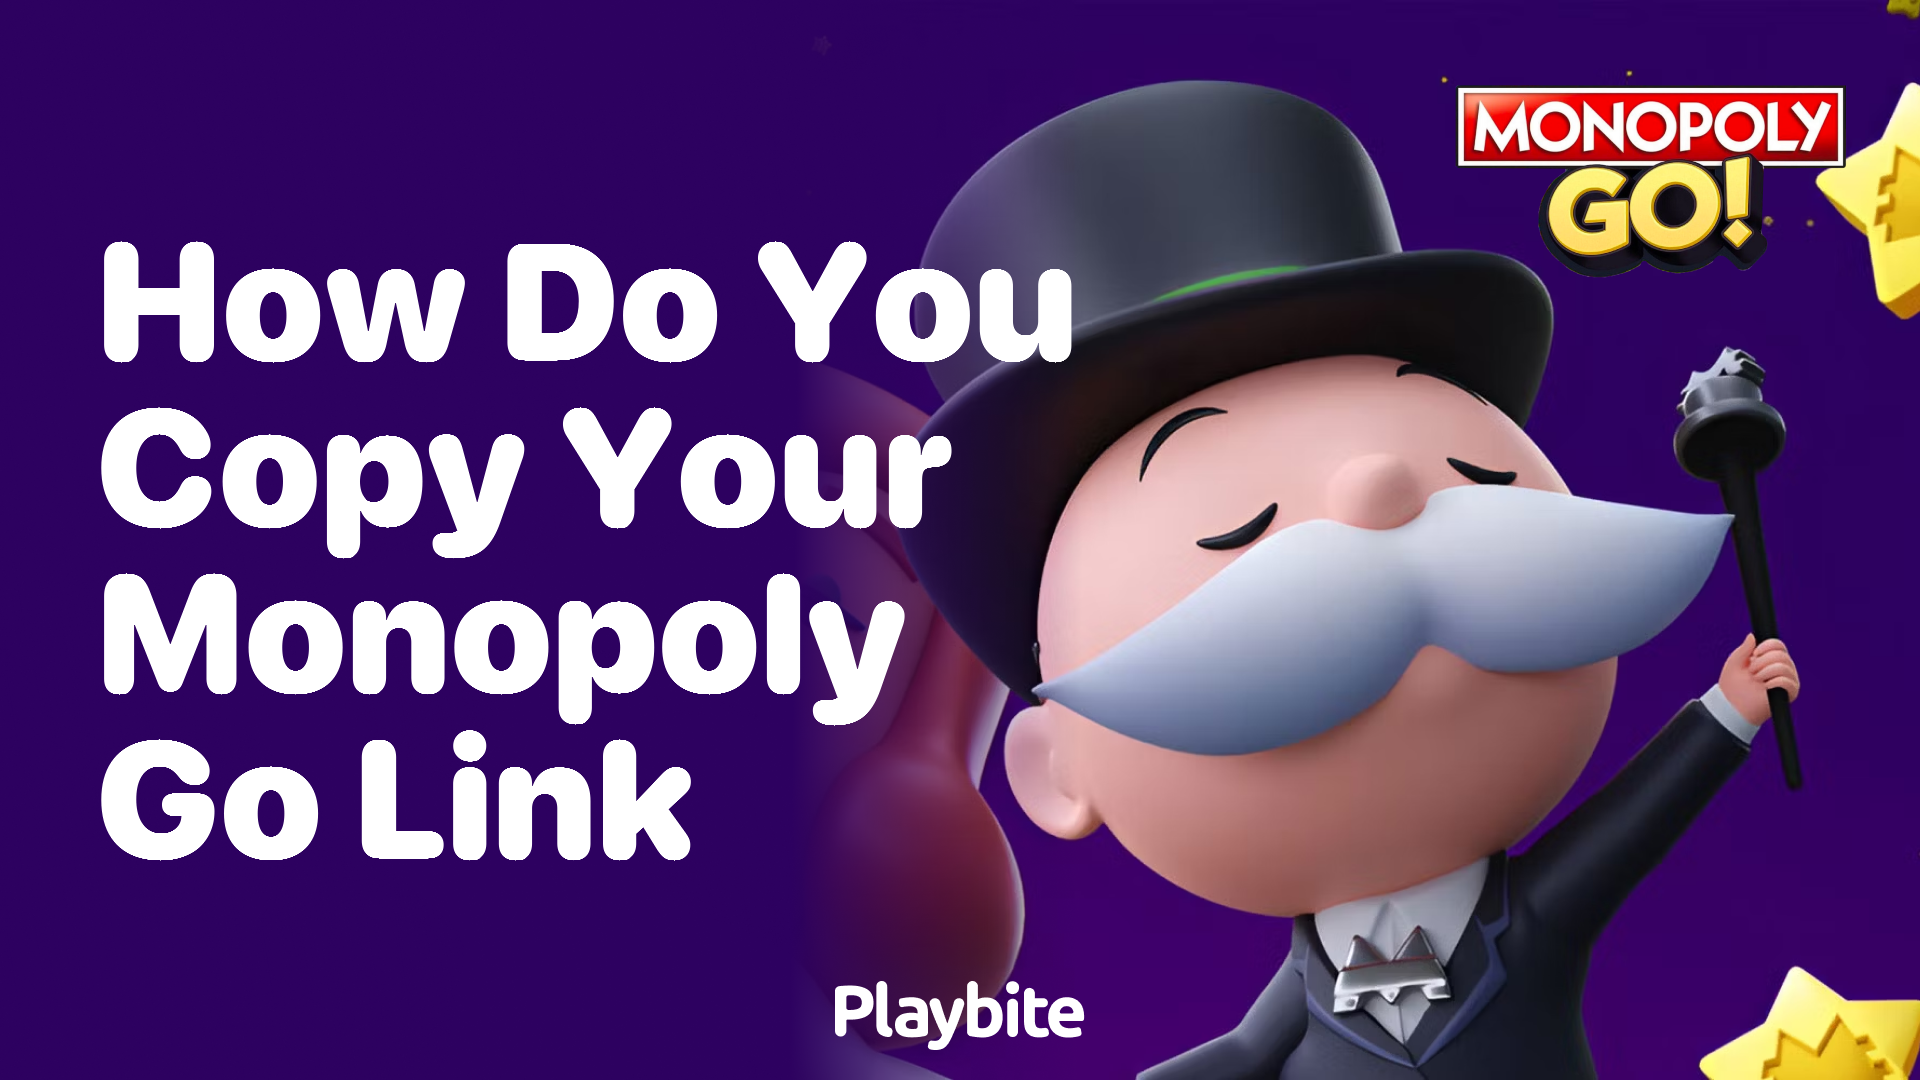 How Do You Copy Your Monopoly Go Link?